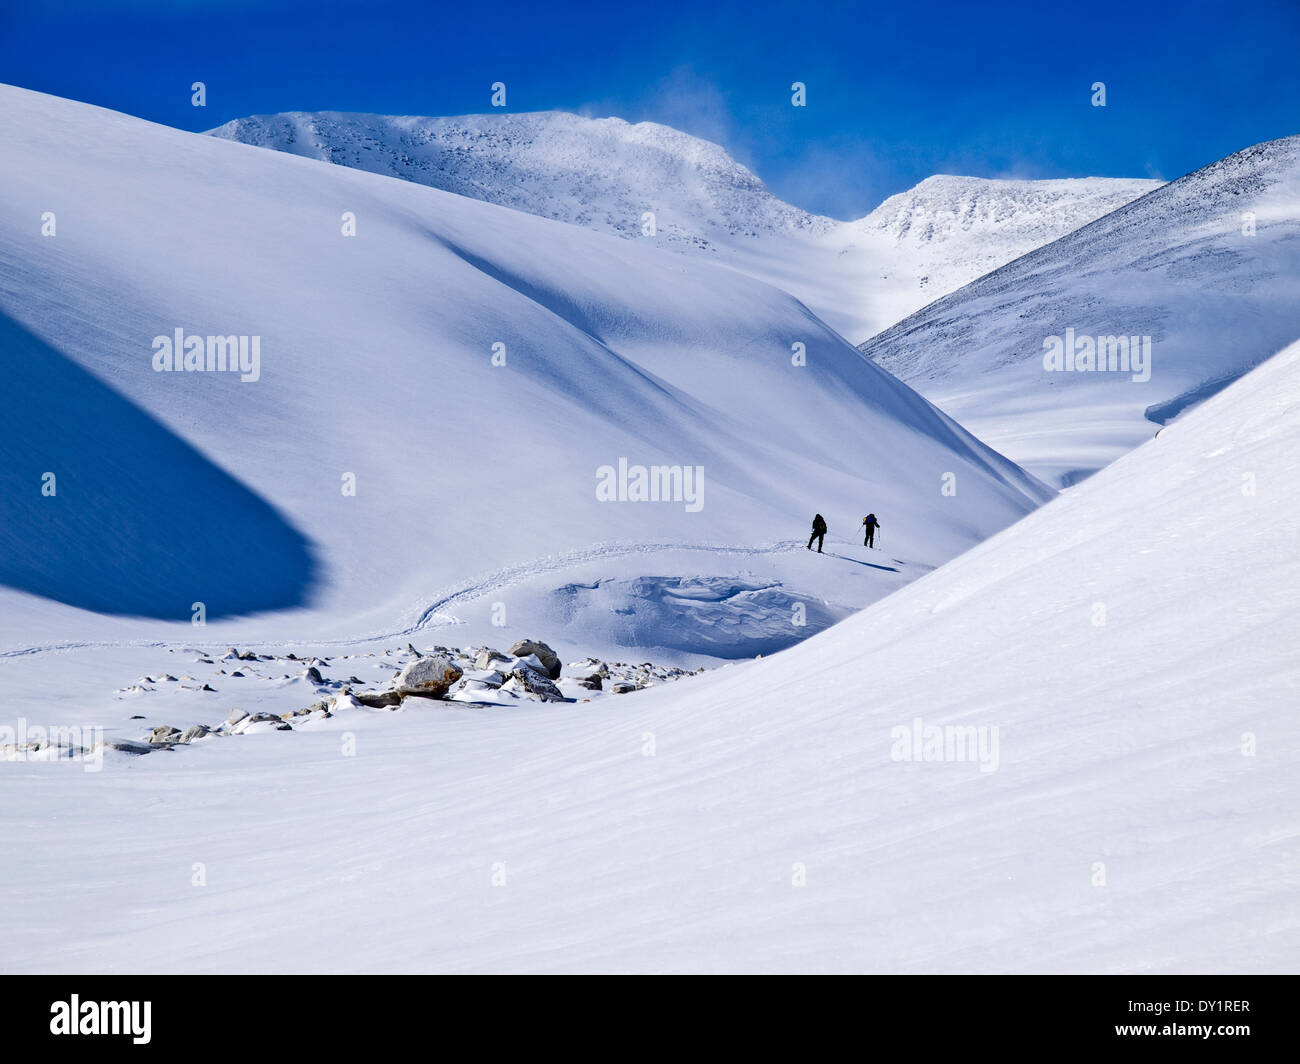 2 Personen Skitouren in Rondane, Norwegen. Riesige schneebedeckte Berge Zwerg die Skifahrer Stockfoto